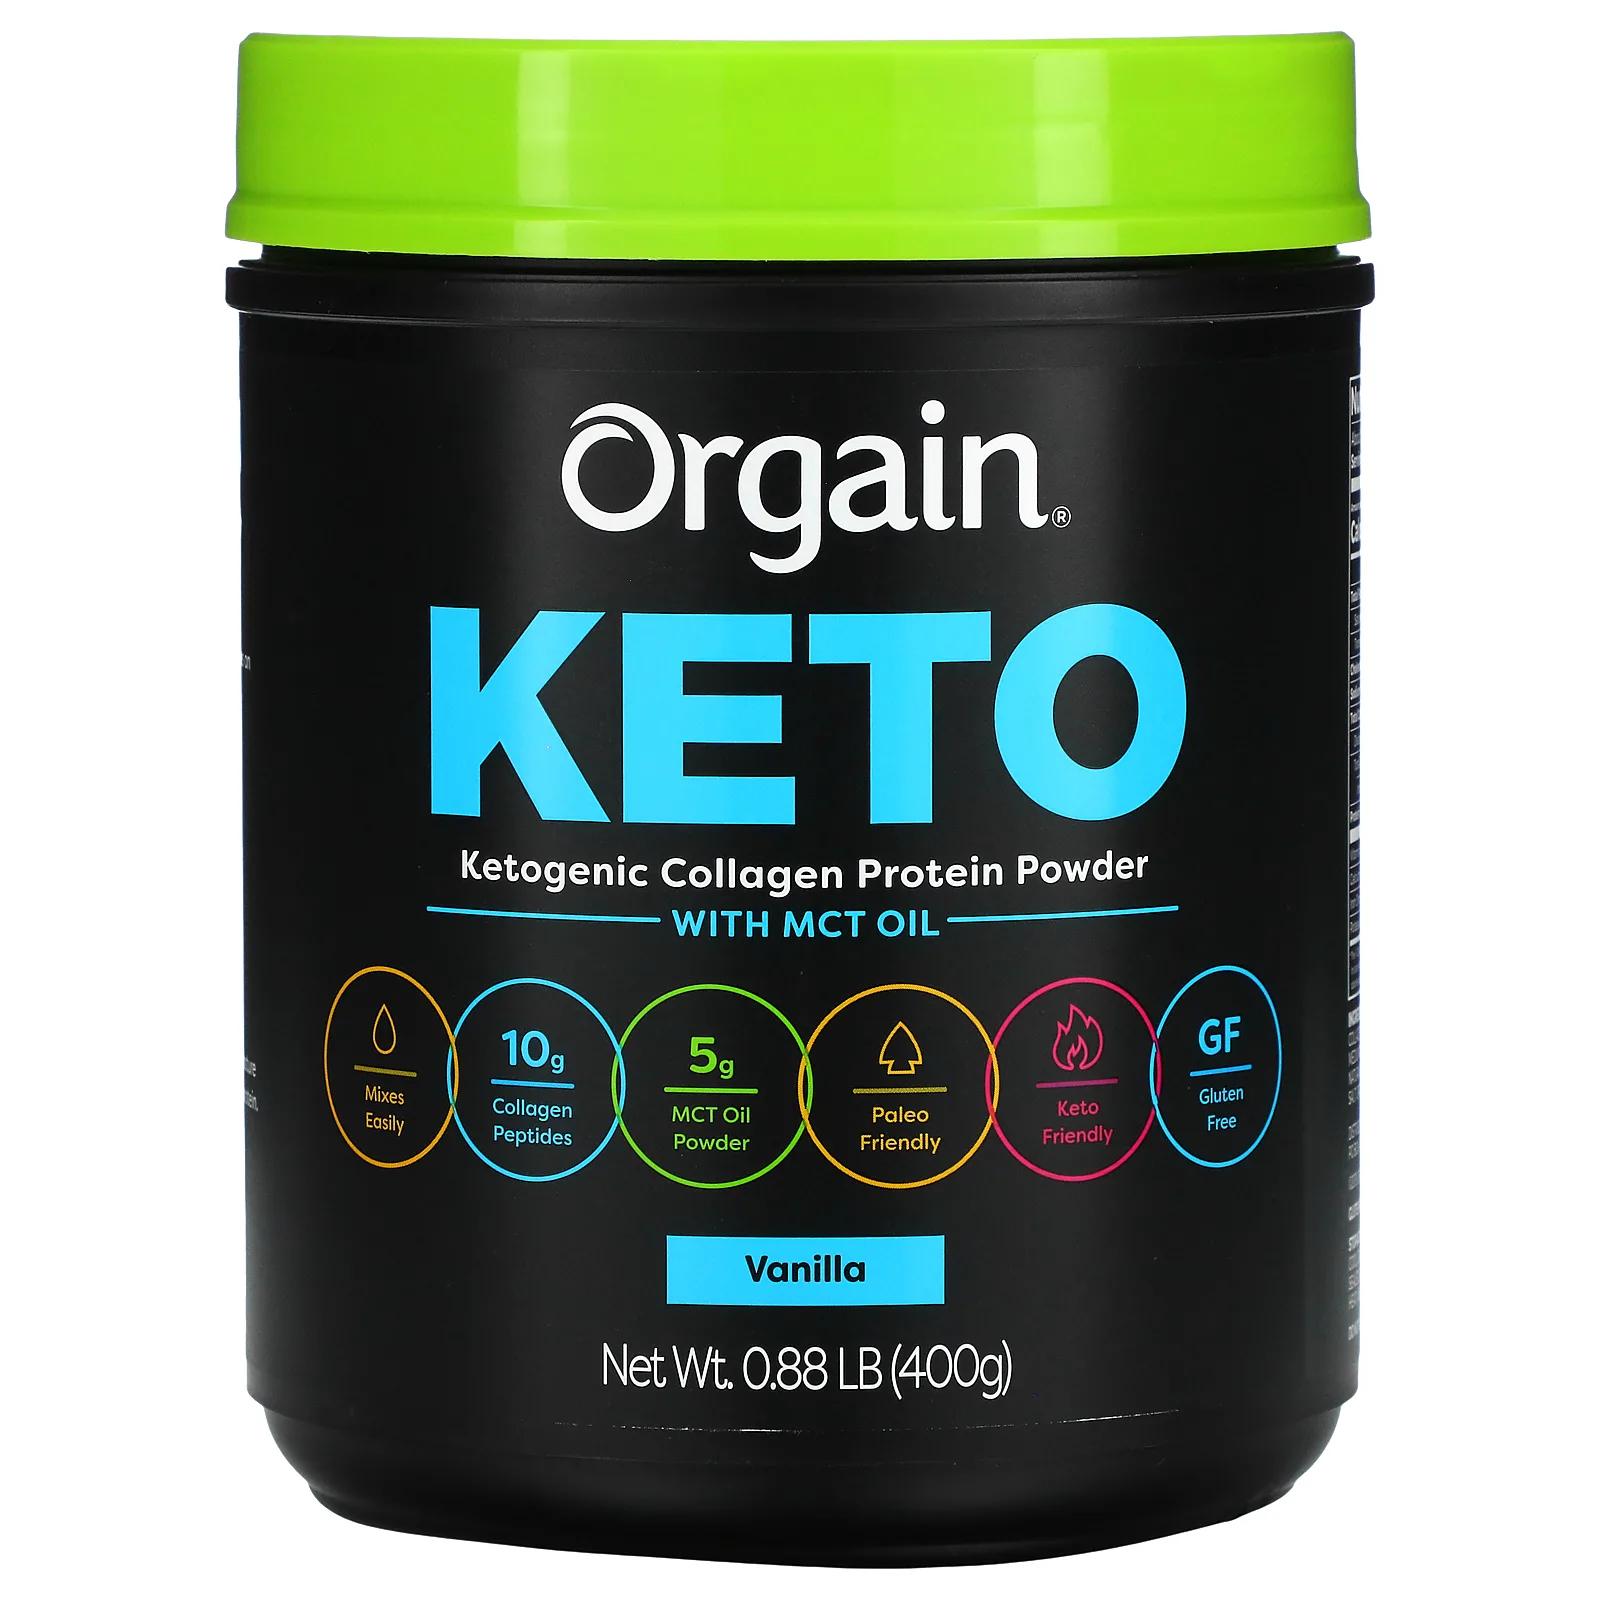 Orgain Keto протеиновый порошок из кетогенного коллагена с маслом MCT ваниль 400 г (0,88 фунта) orgain keto протеиновый порошок из кетогенного коллагена с маслом mct ваниль 400 г 0 88 фунта